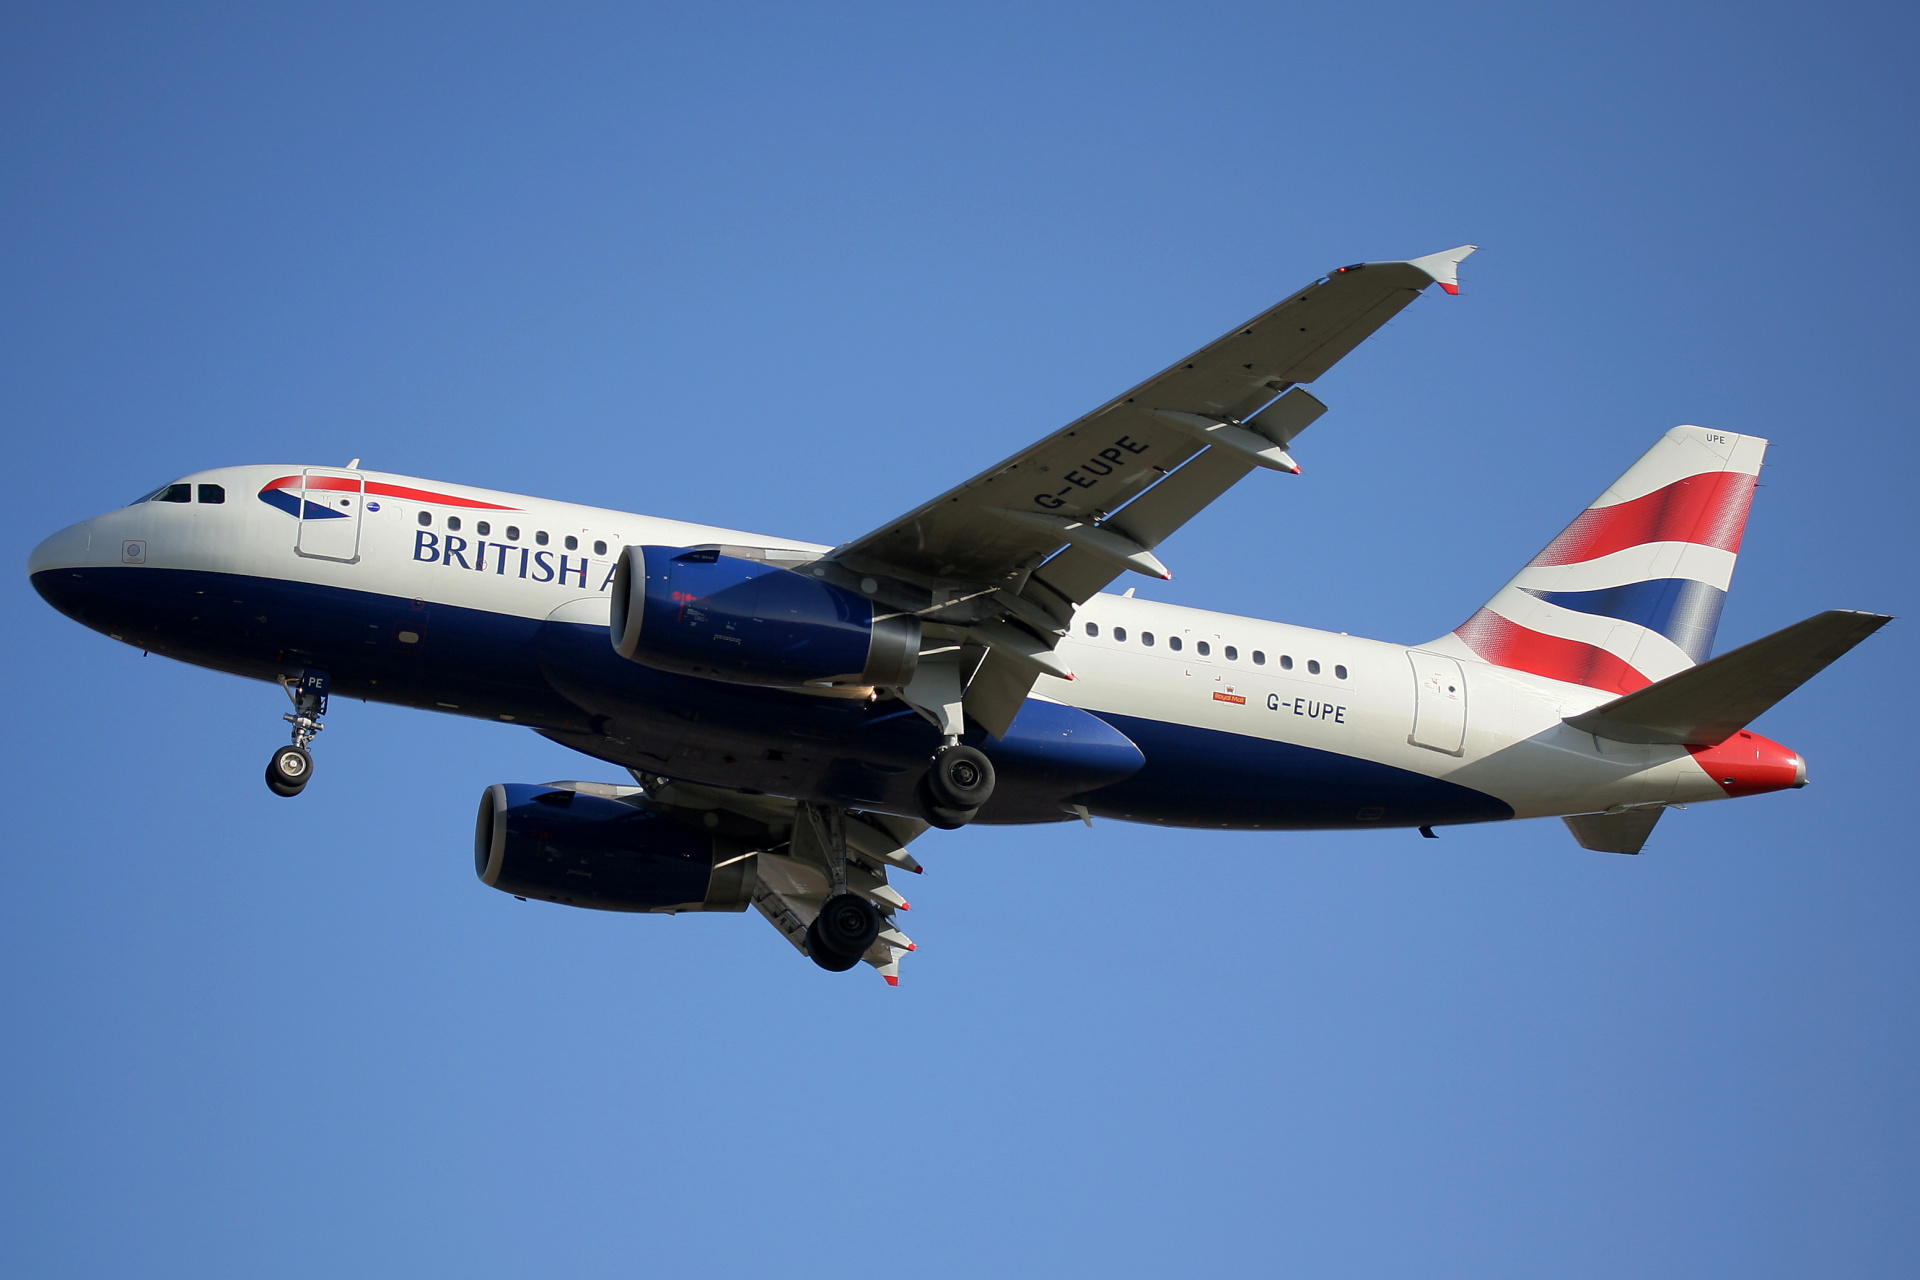 G-EUPE (Aircraft » EPWA Spotting » Airbus A319-100 » British Airways)